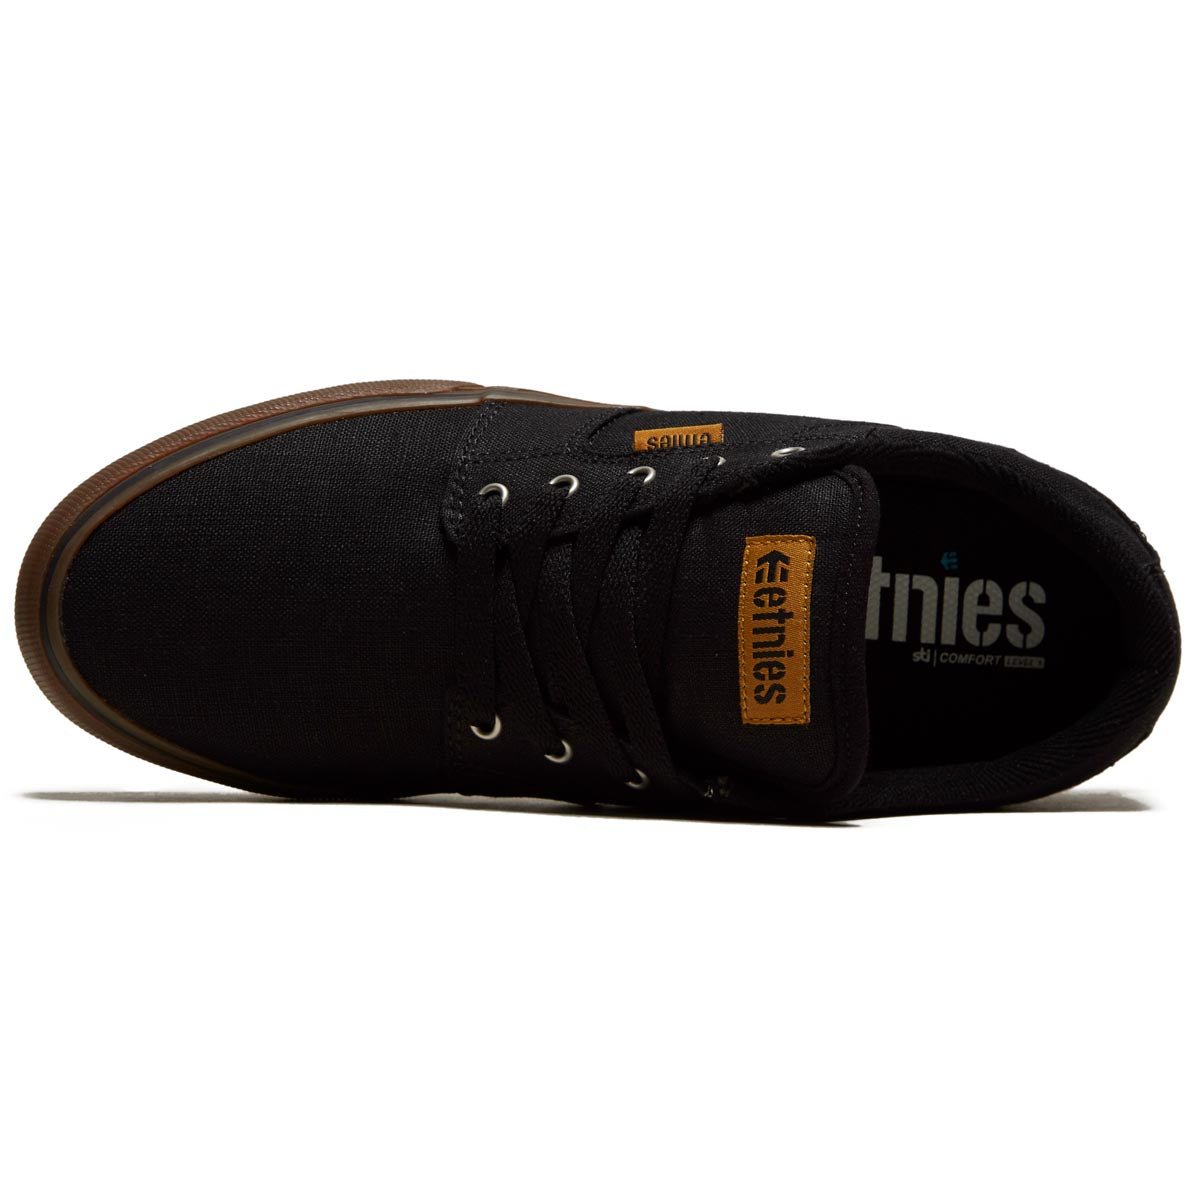 Etnies Barge LS Shoes - Black/Gum/Silver image 3